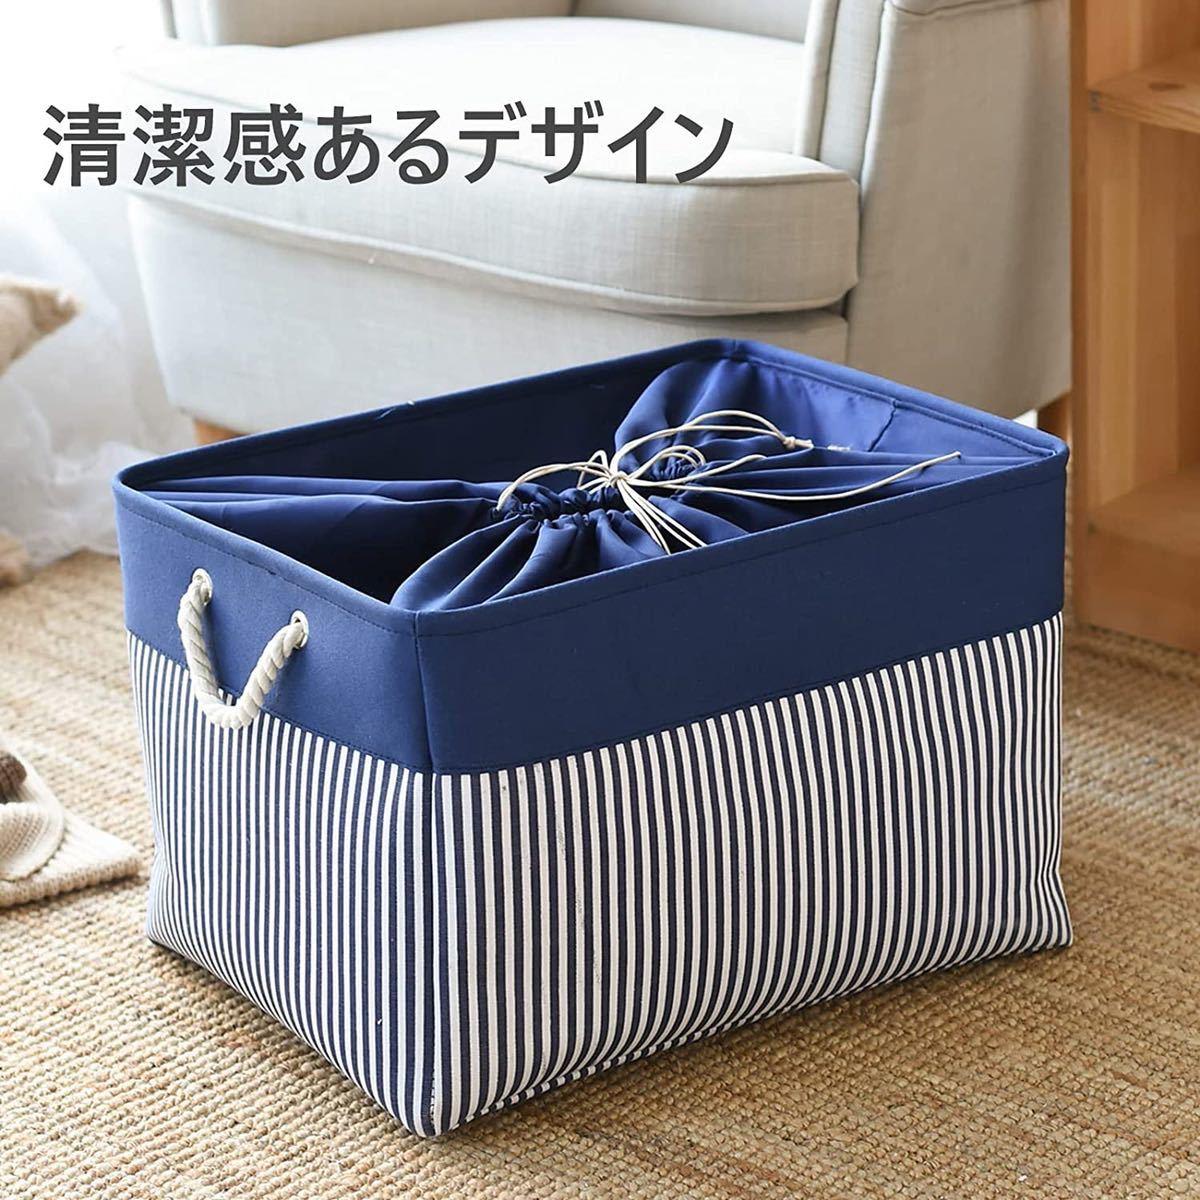 収納ボックス 綿麻製ランドリーバスケット 巾着付き 折りたたみ式取っ手付き青い_画像6